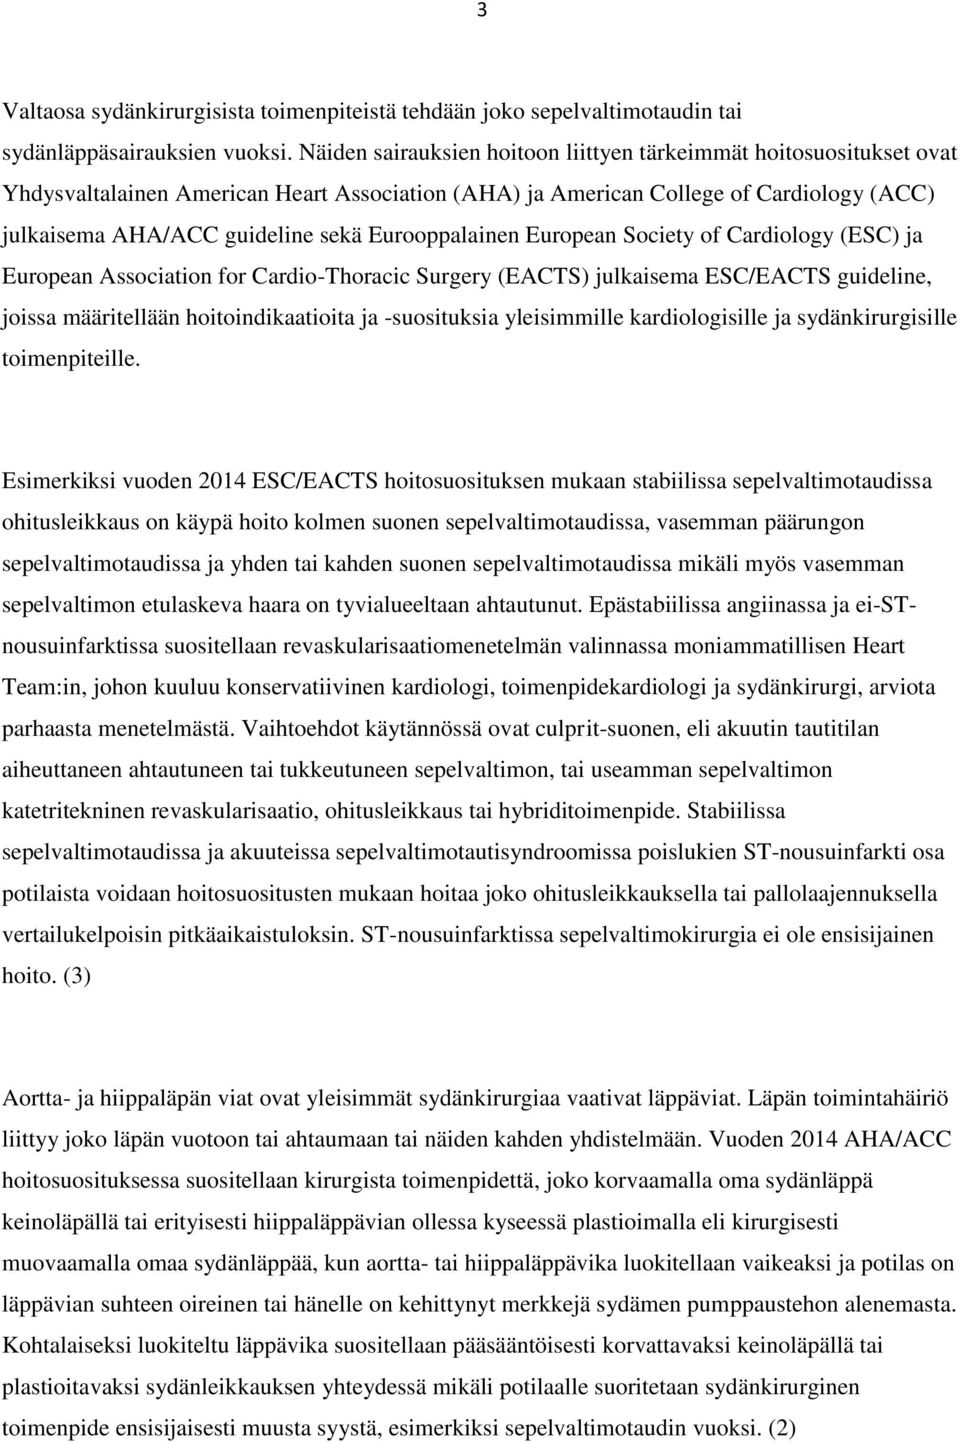 Eurooppalainen European Society of Cardiology (ESC) ja European Association for Cardio-Thoracic Surgery (EACTS) julkaisema ESC/EACTS guideline, joissa määritellään hoitoindikaatioita ja -suosituksia